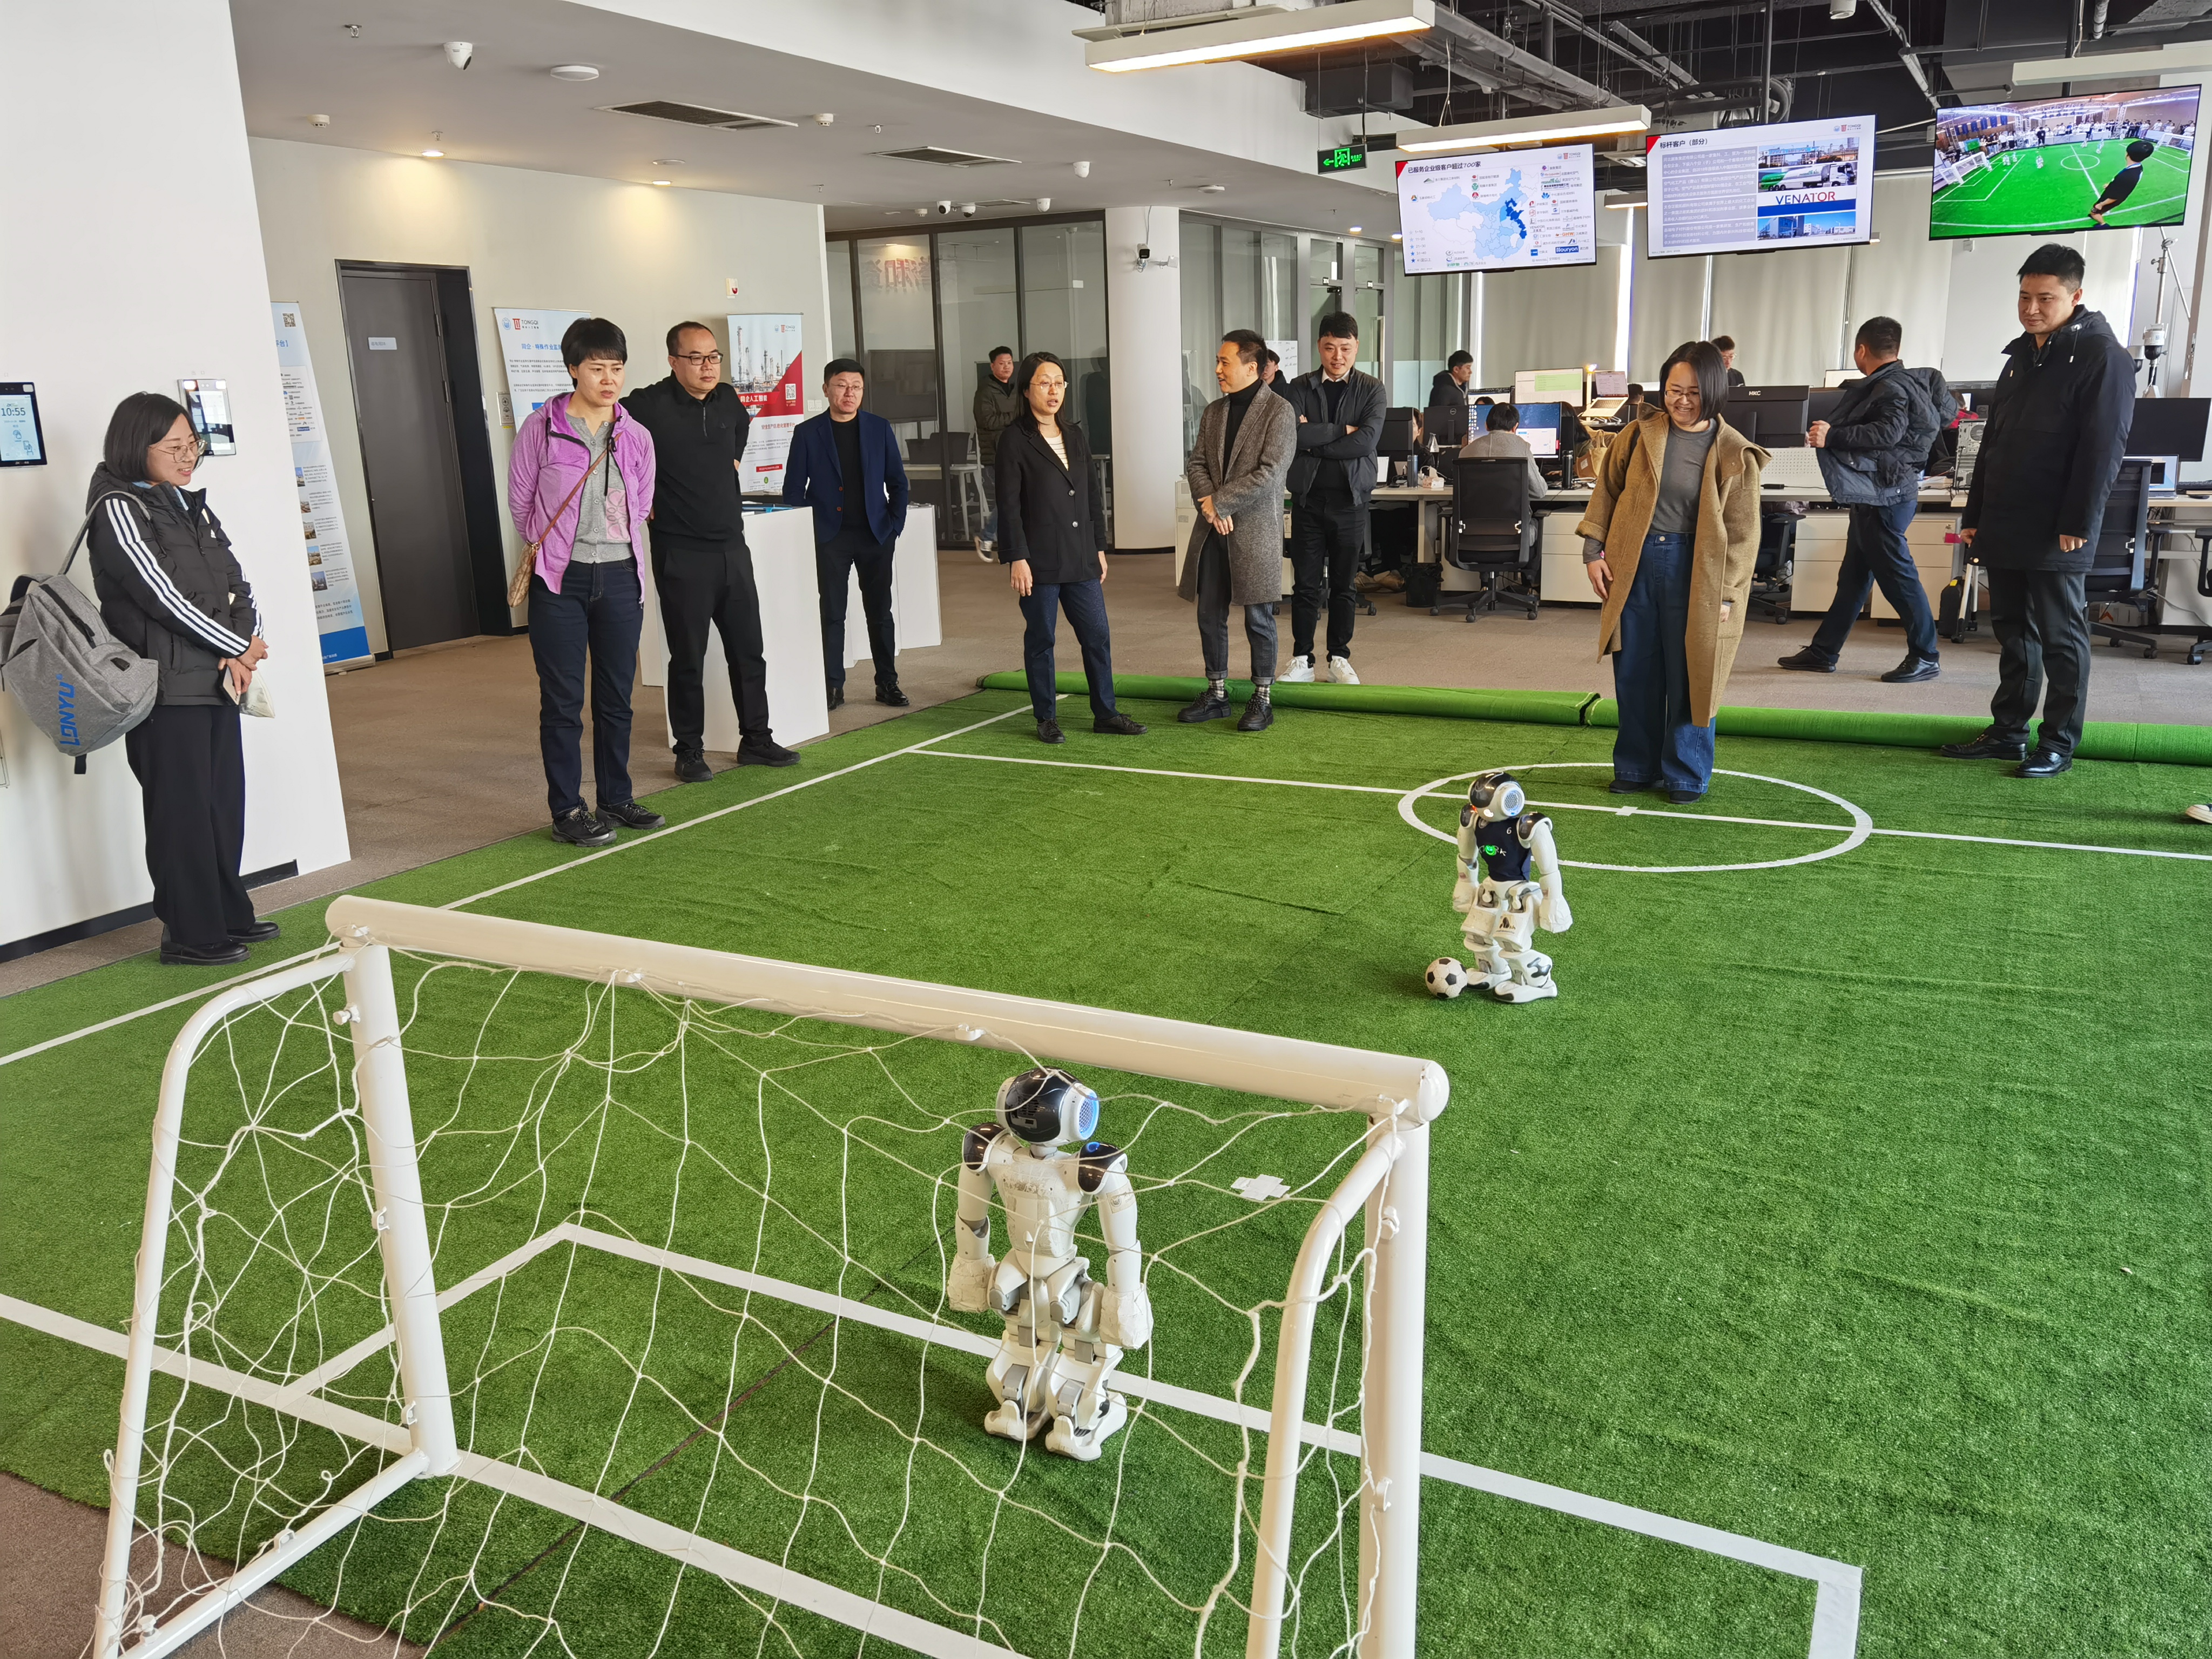 天津市静海区委常委、副区长赴同企调研安全生产信息化管理平台与智能化机器人